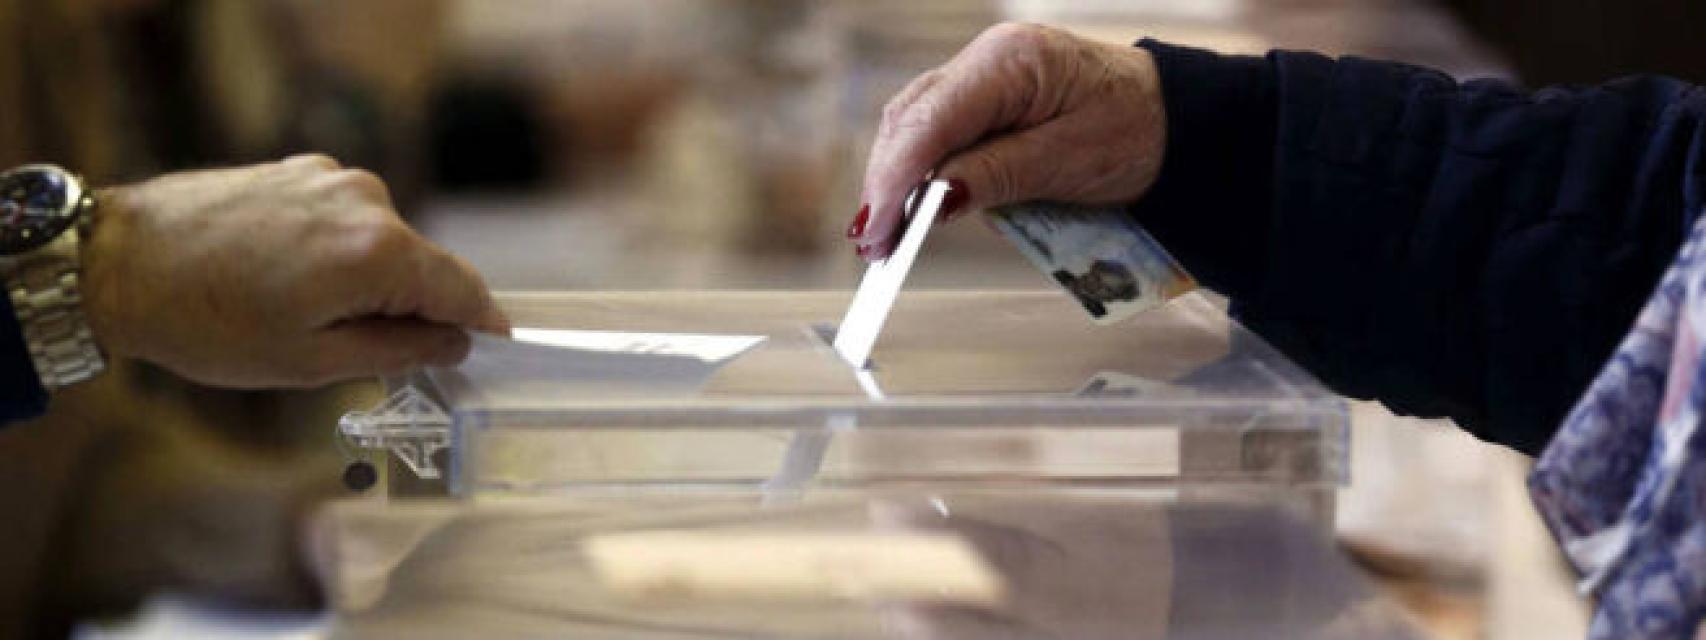 Una persona depositando su voto en una urna, en imagen de archivo.